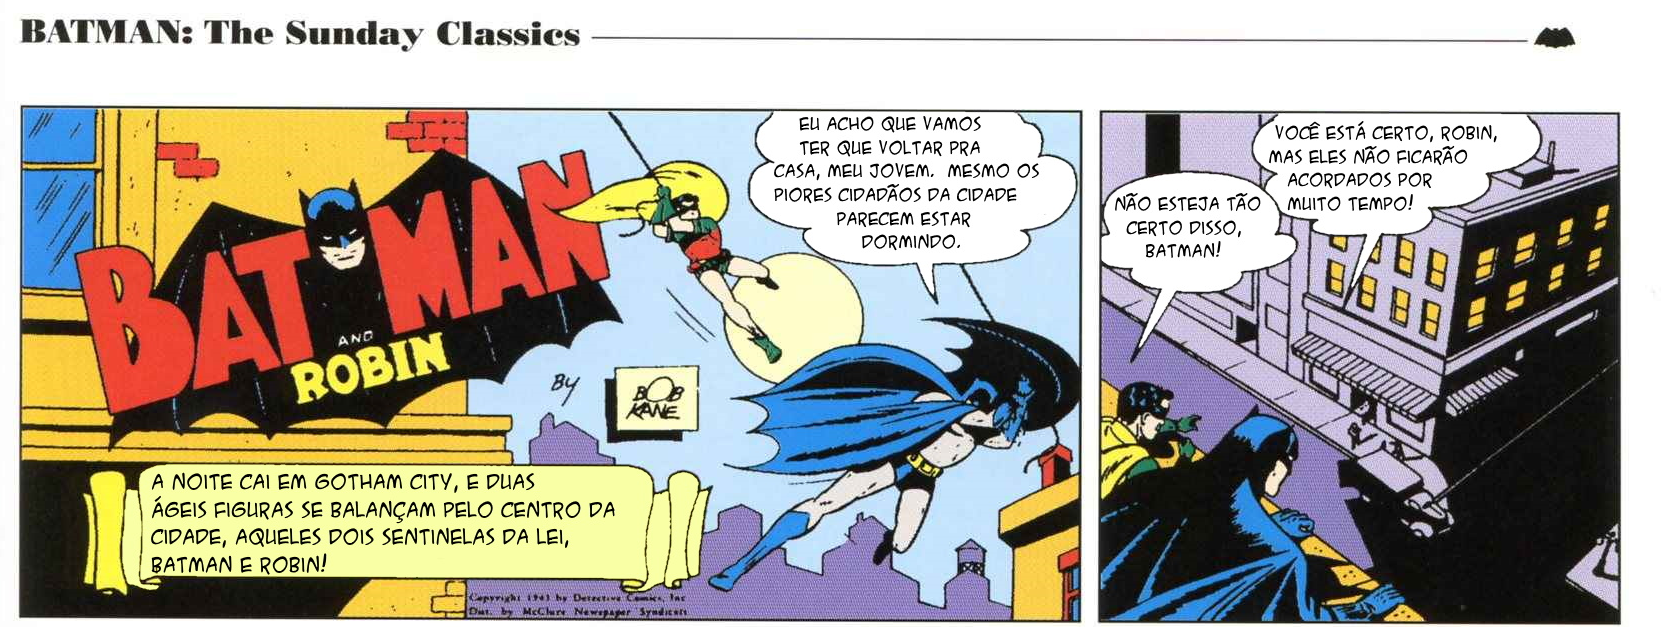 2 - Batman Vintage 1a